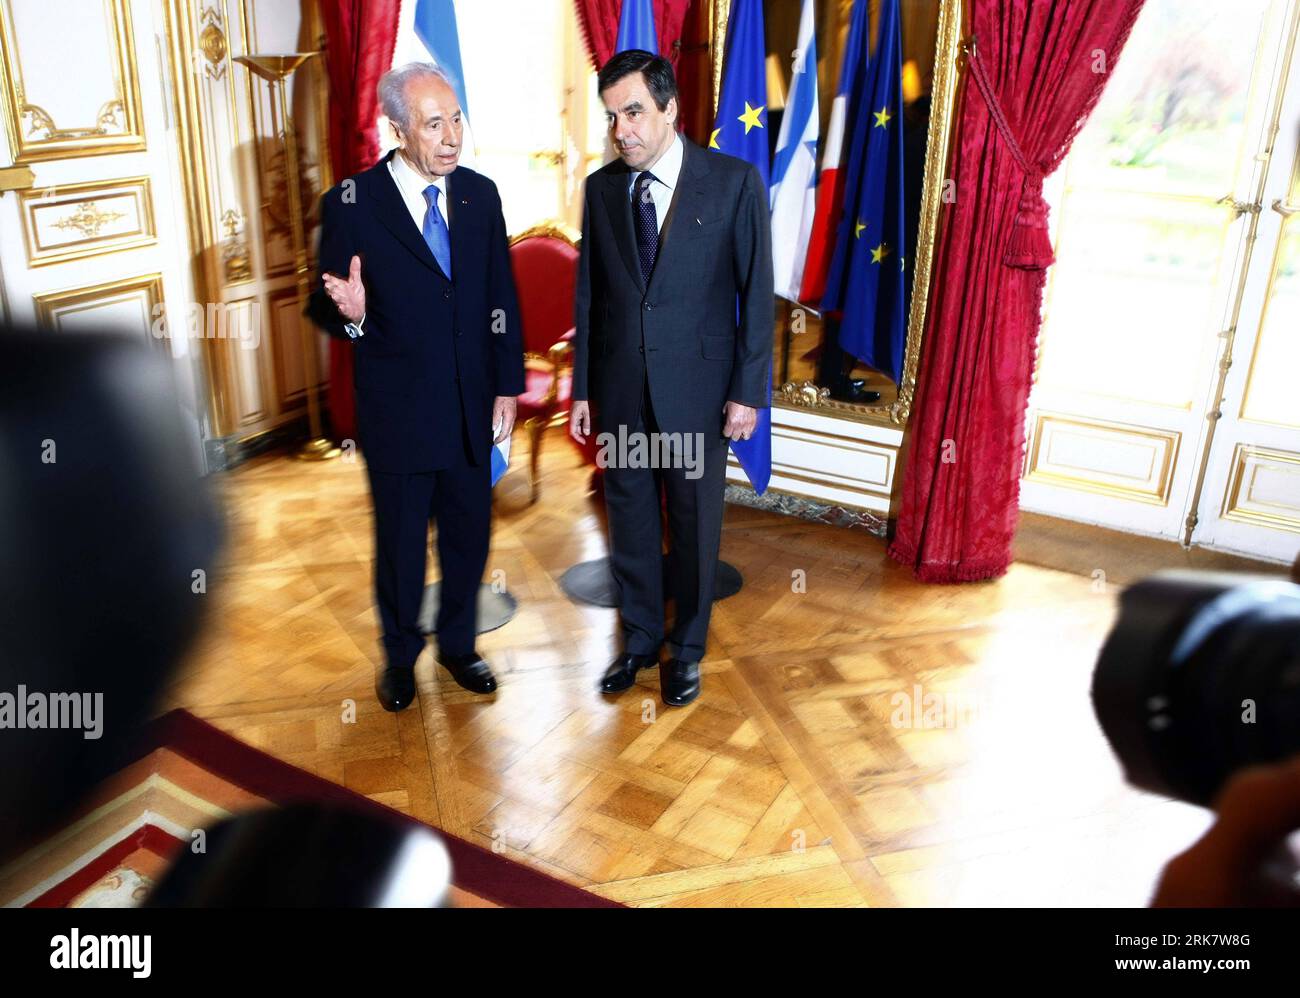 Bildnummer : 53939205 Datum : 13.04.2010 Copyright : imago/Xinhua (100414) -- PARIS, 14 avril 2010 (Xinhua) -- le Premier ministre français François Fillon (à droite) salue la visite du président israélien Shimon Peres avant leur rencontre dans les bureaux de l'Hôtel Matignon à Paris, capitale de la France, le 13 avril 2010. Peres a déclaré ici mardi que les négociations de paix entre Israël et les Palestiniens devraient être relancées prochainement. (Xinhua/Zhang Yuwei) (ypf) (4)FRANCE-PARIS-ISRAEL-PERES-VISIT PUBLICATIONxNOTxINxCHN Politik people kbdig xub 2010 quer premiumd xint Bildnummer 53939205 Date 13 04 2010 Copyright Banque D'Images